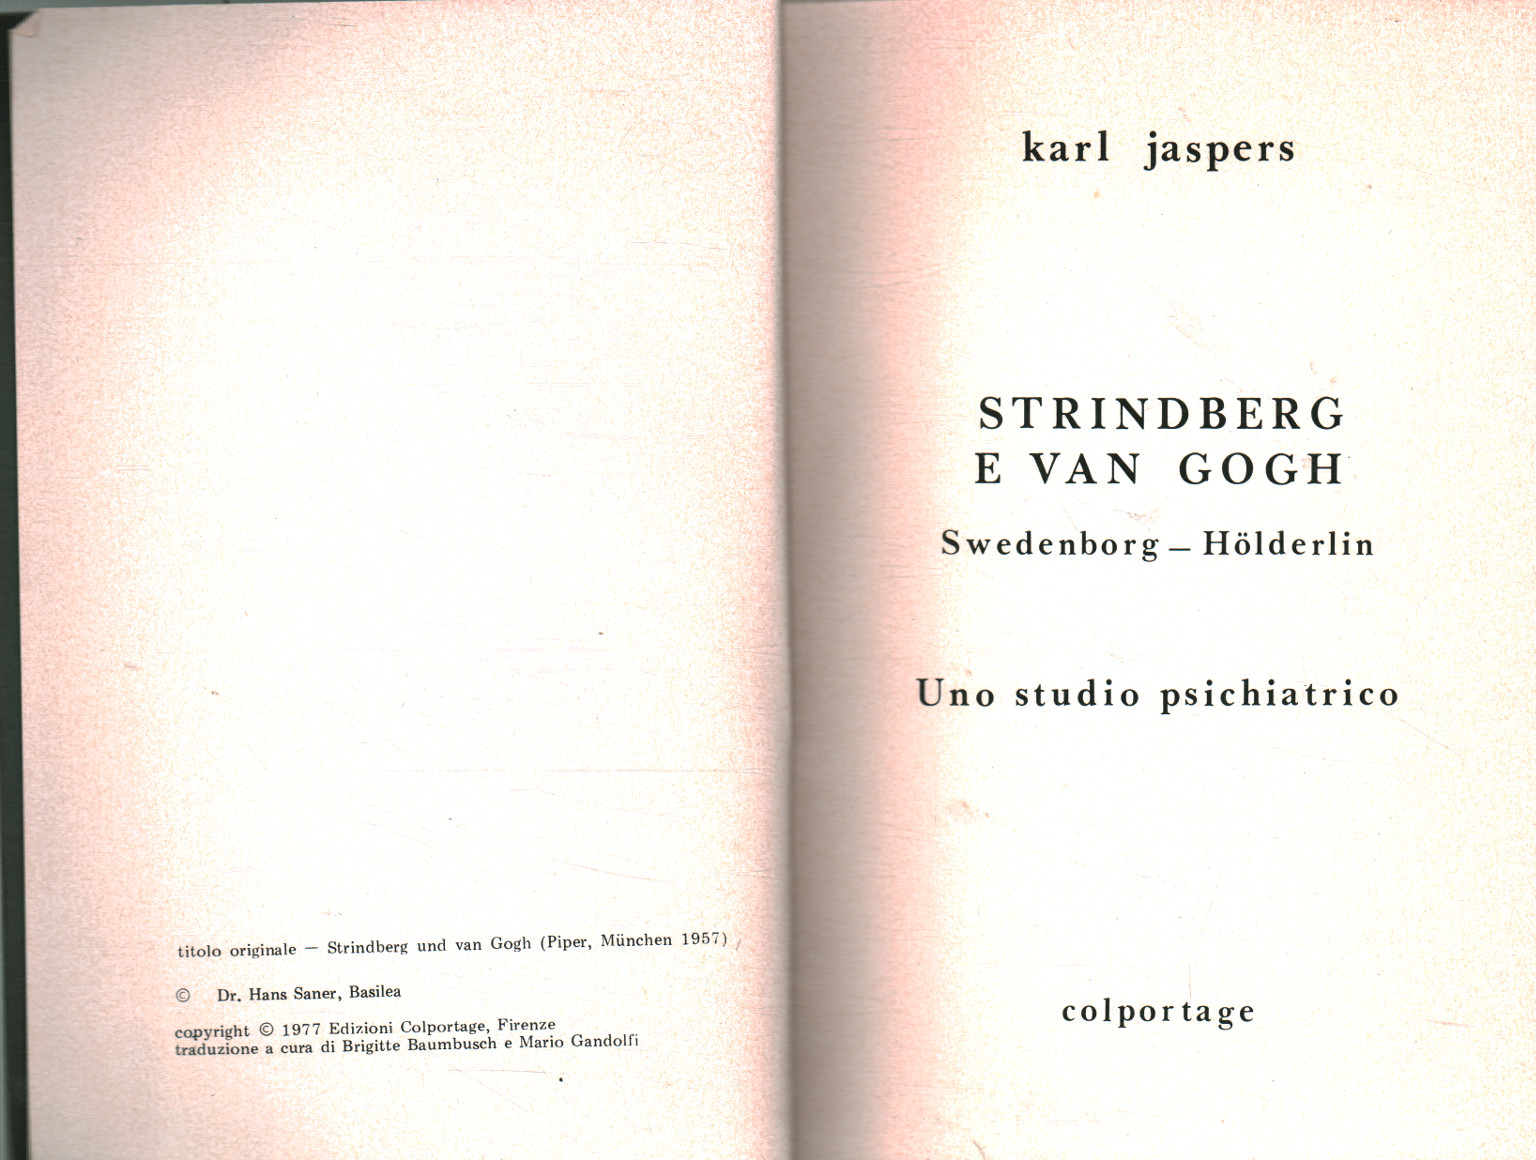 Strindberg and Van Gogh, Karl Jaspers